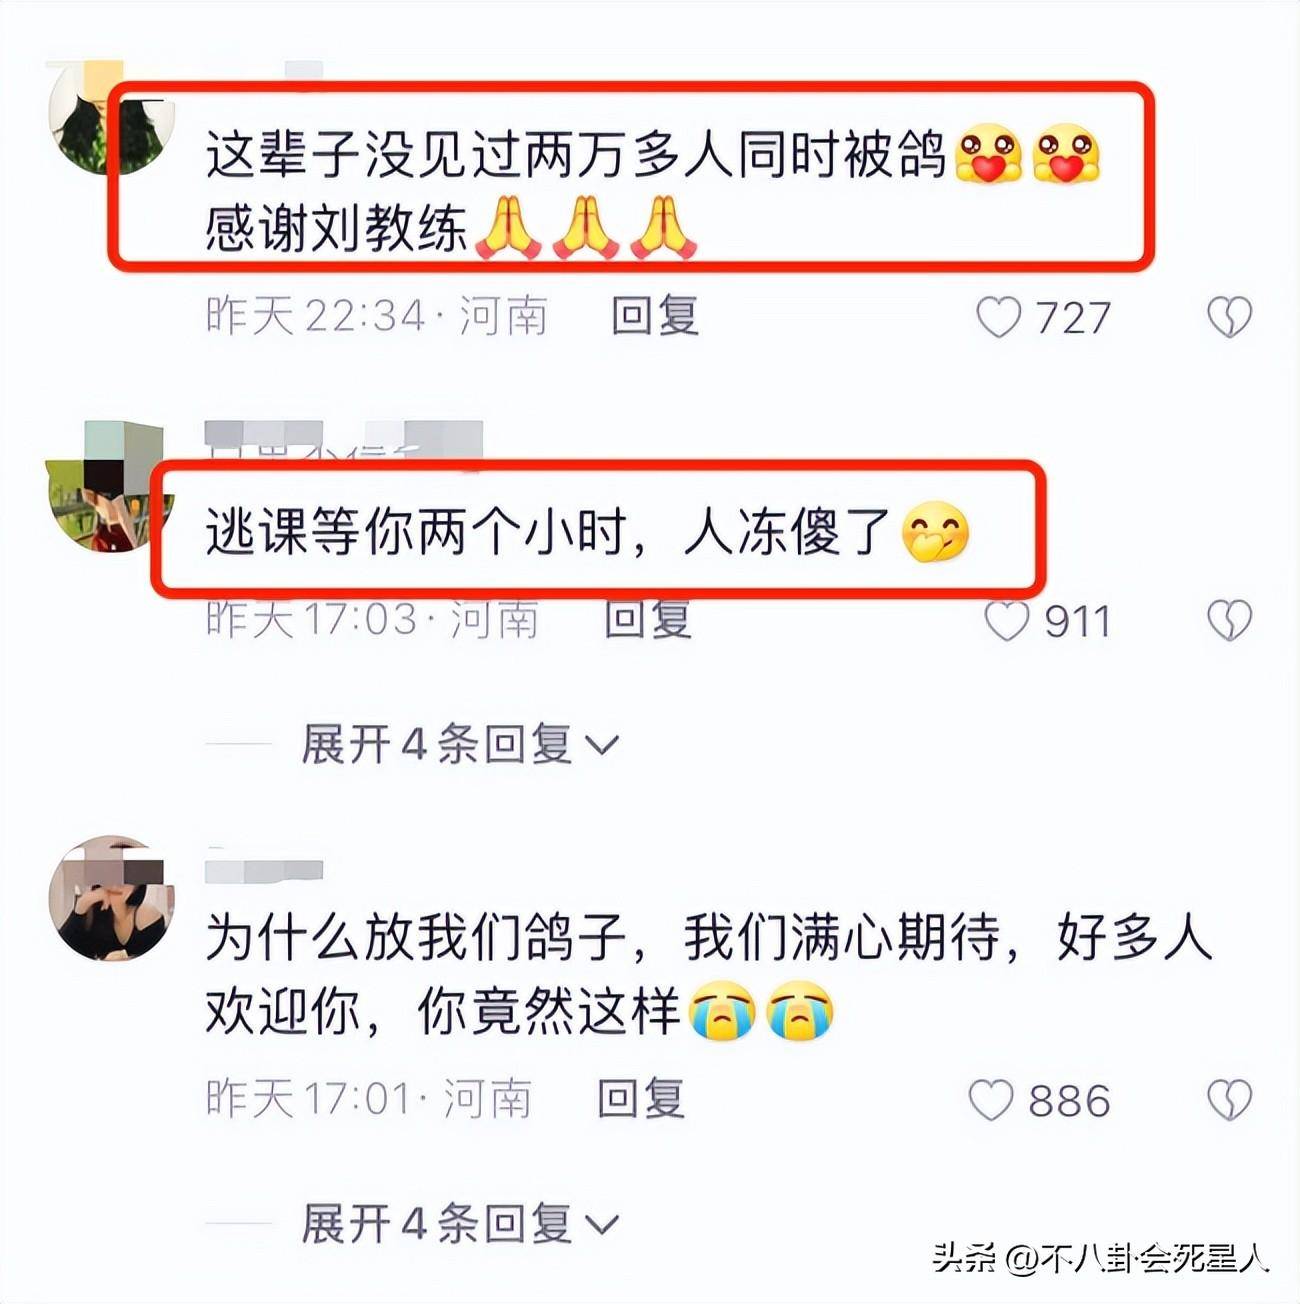 被官方批评、耍大牌、放两万学生鸽子，刘畊宏还不道歉吗?？！